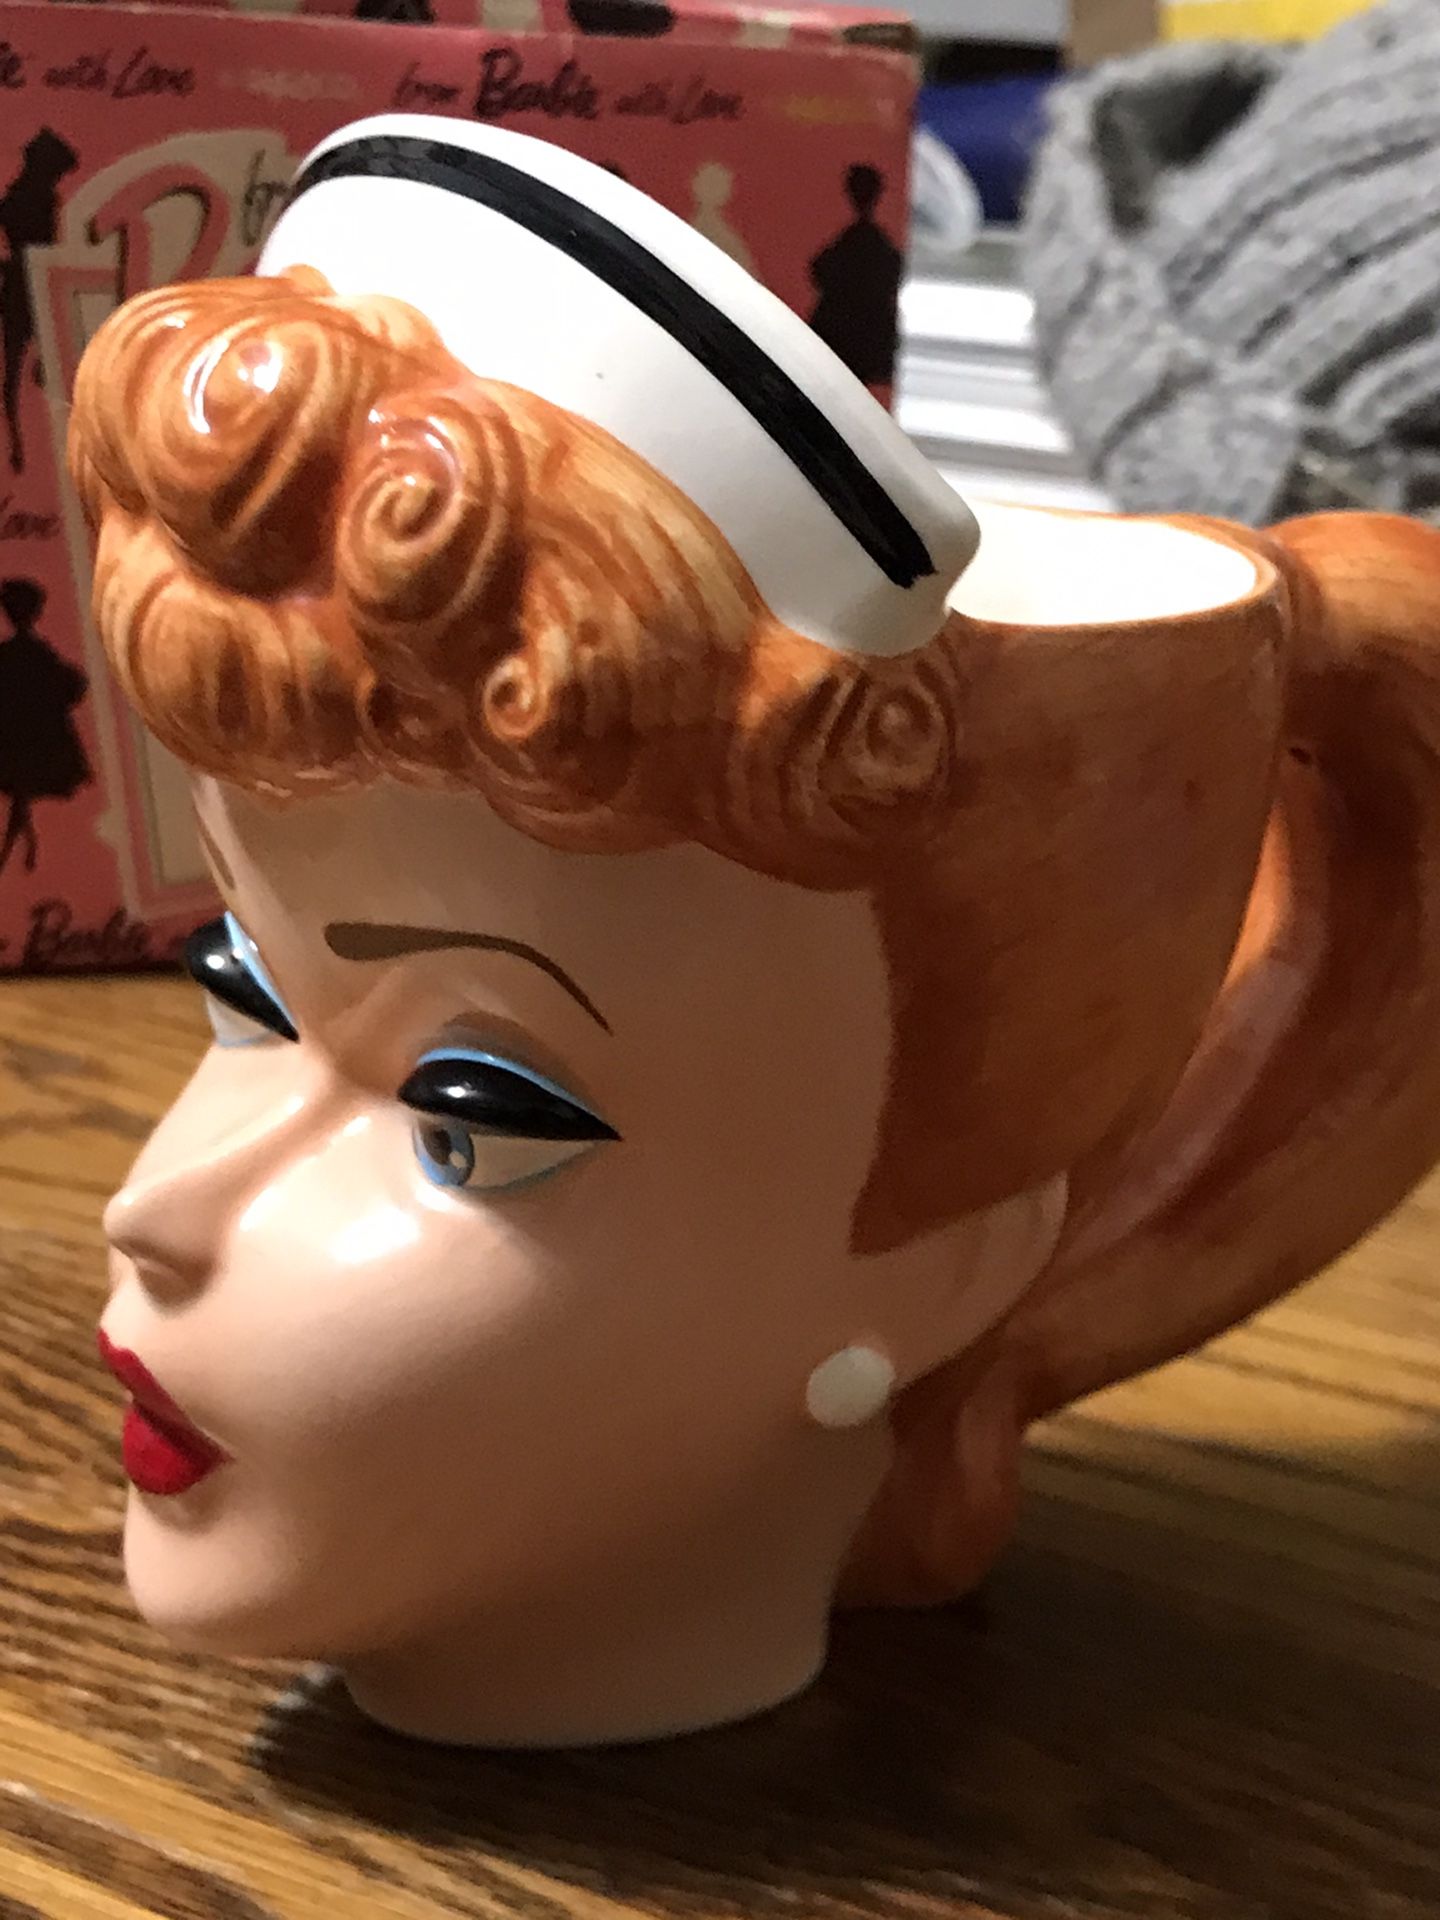 Vintage Barbie mug